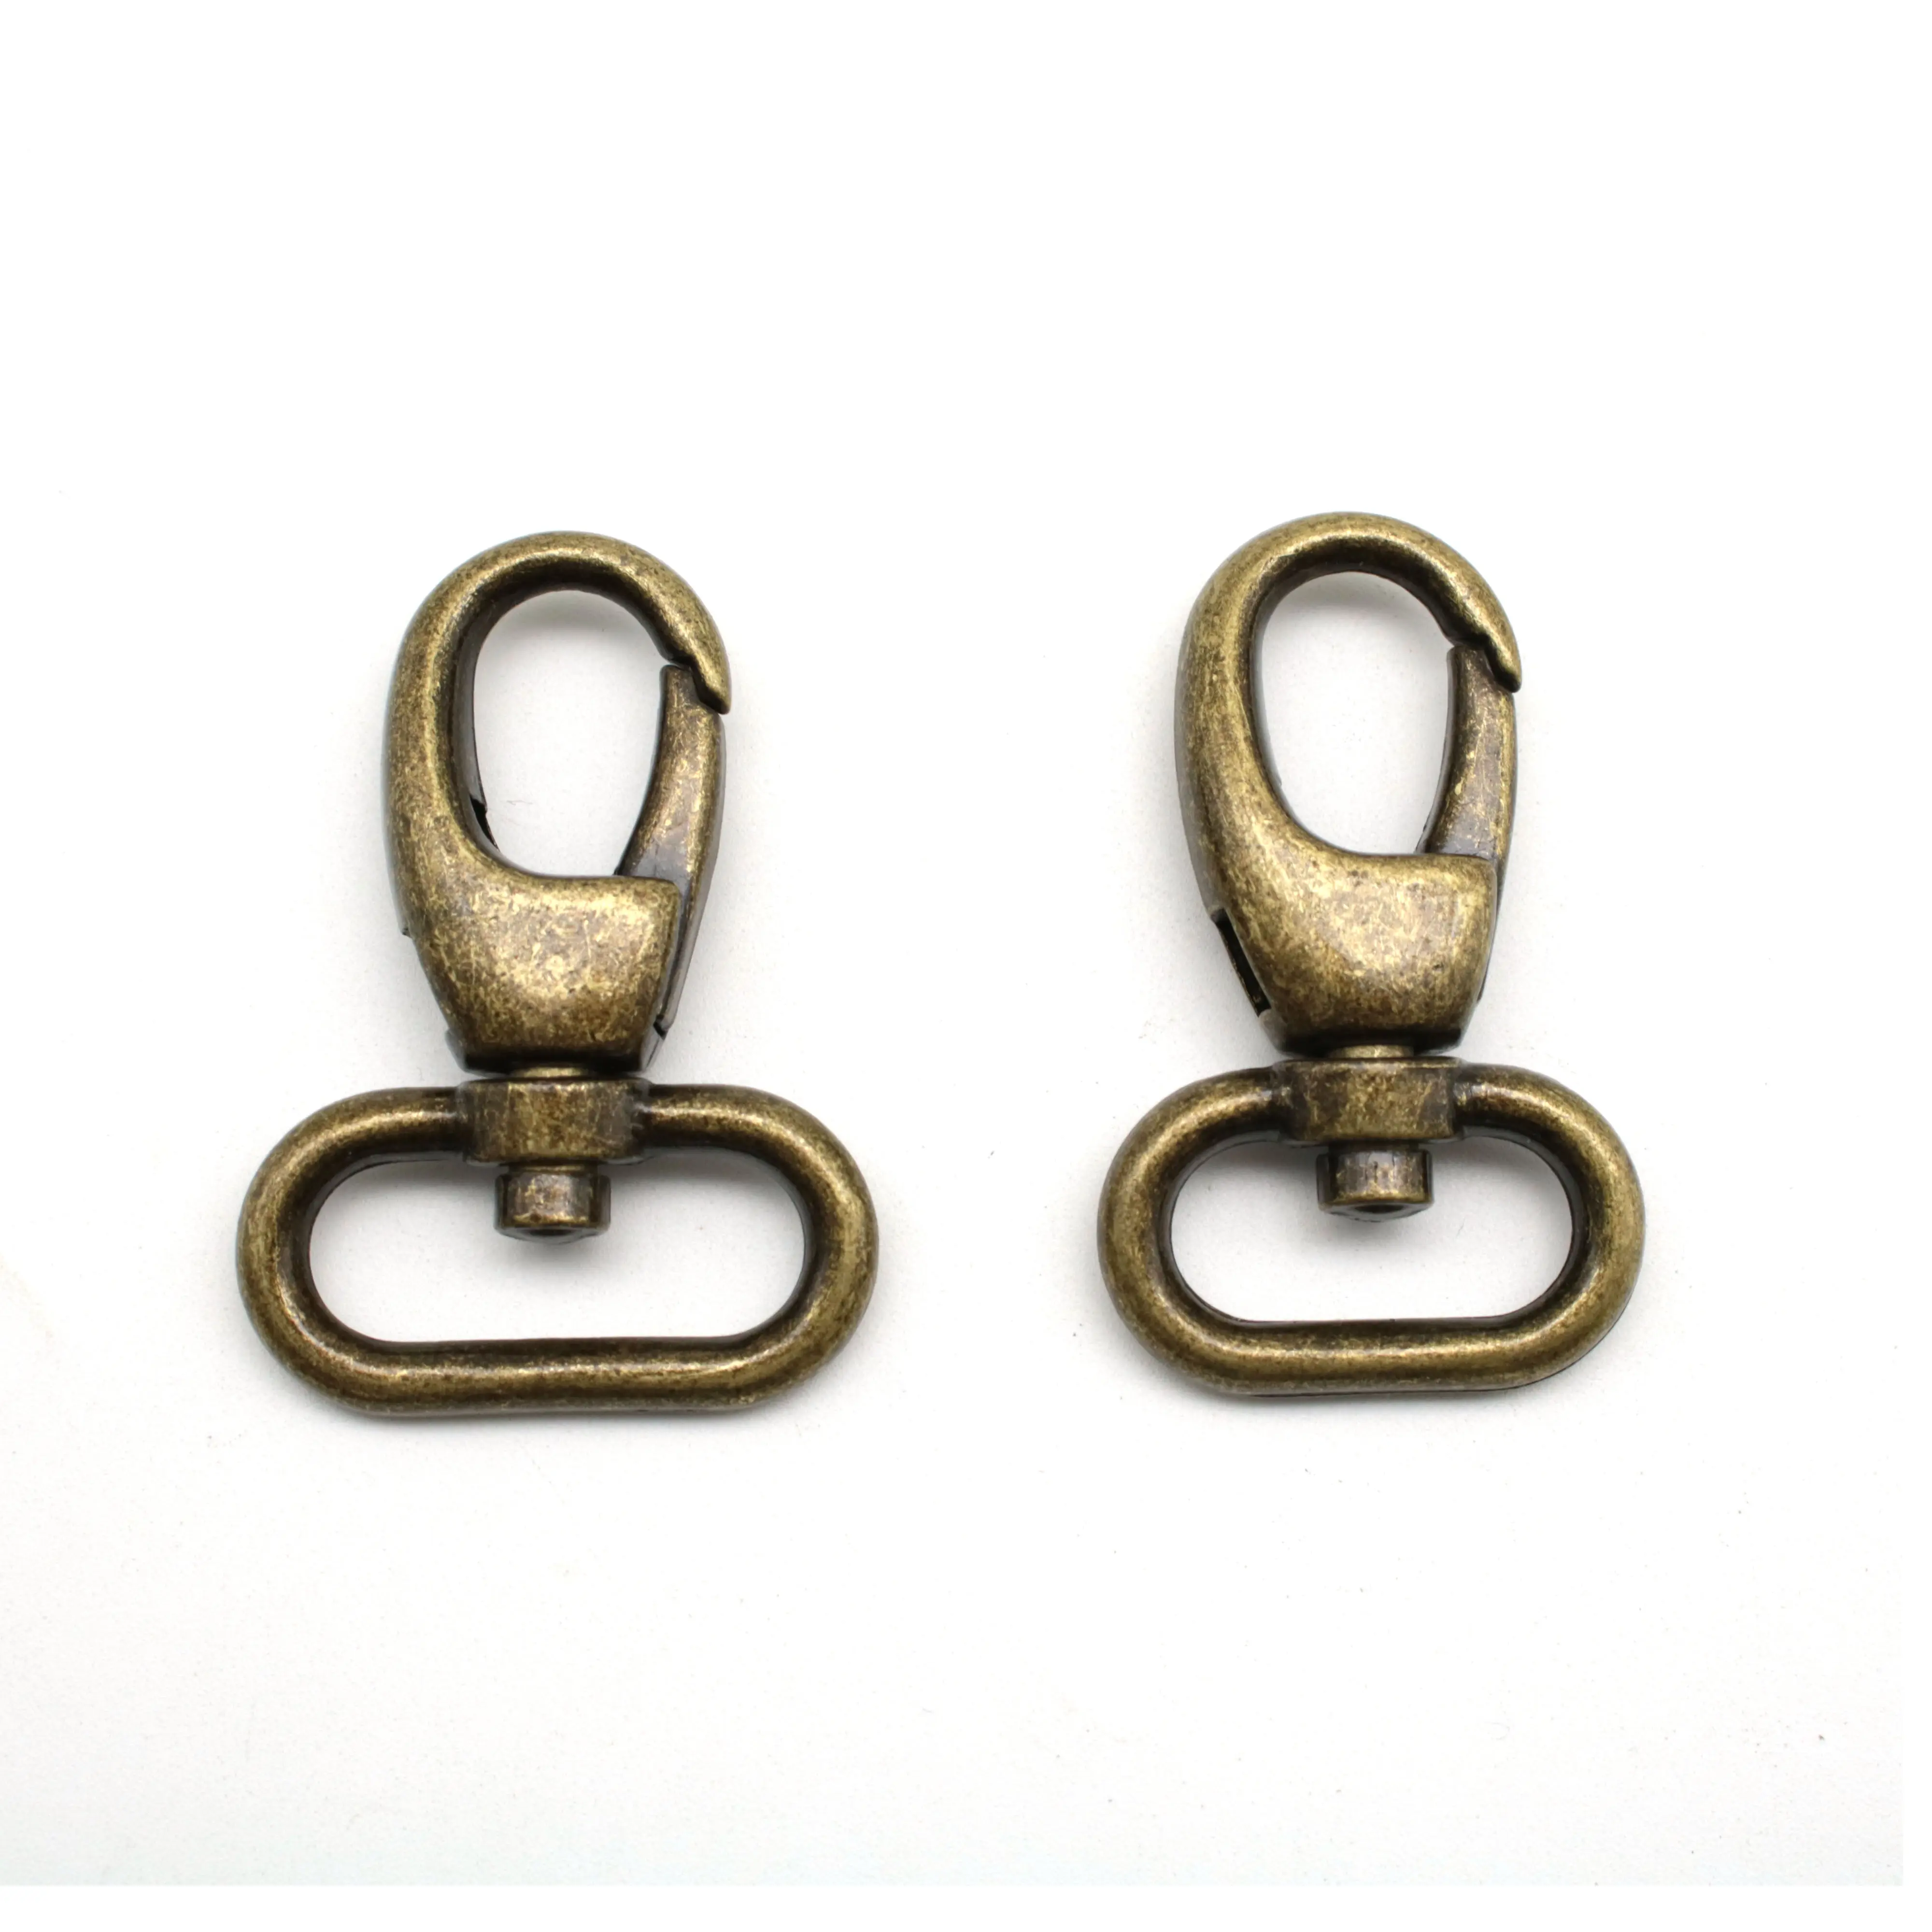 Metal Vintage Antique Brass 20mm 25mm Oval Loop Swivel Snap Hook for Bag